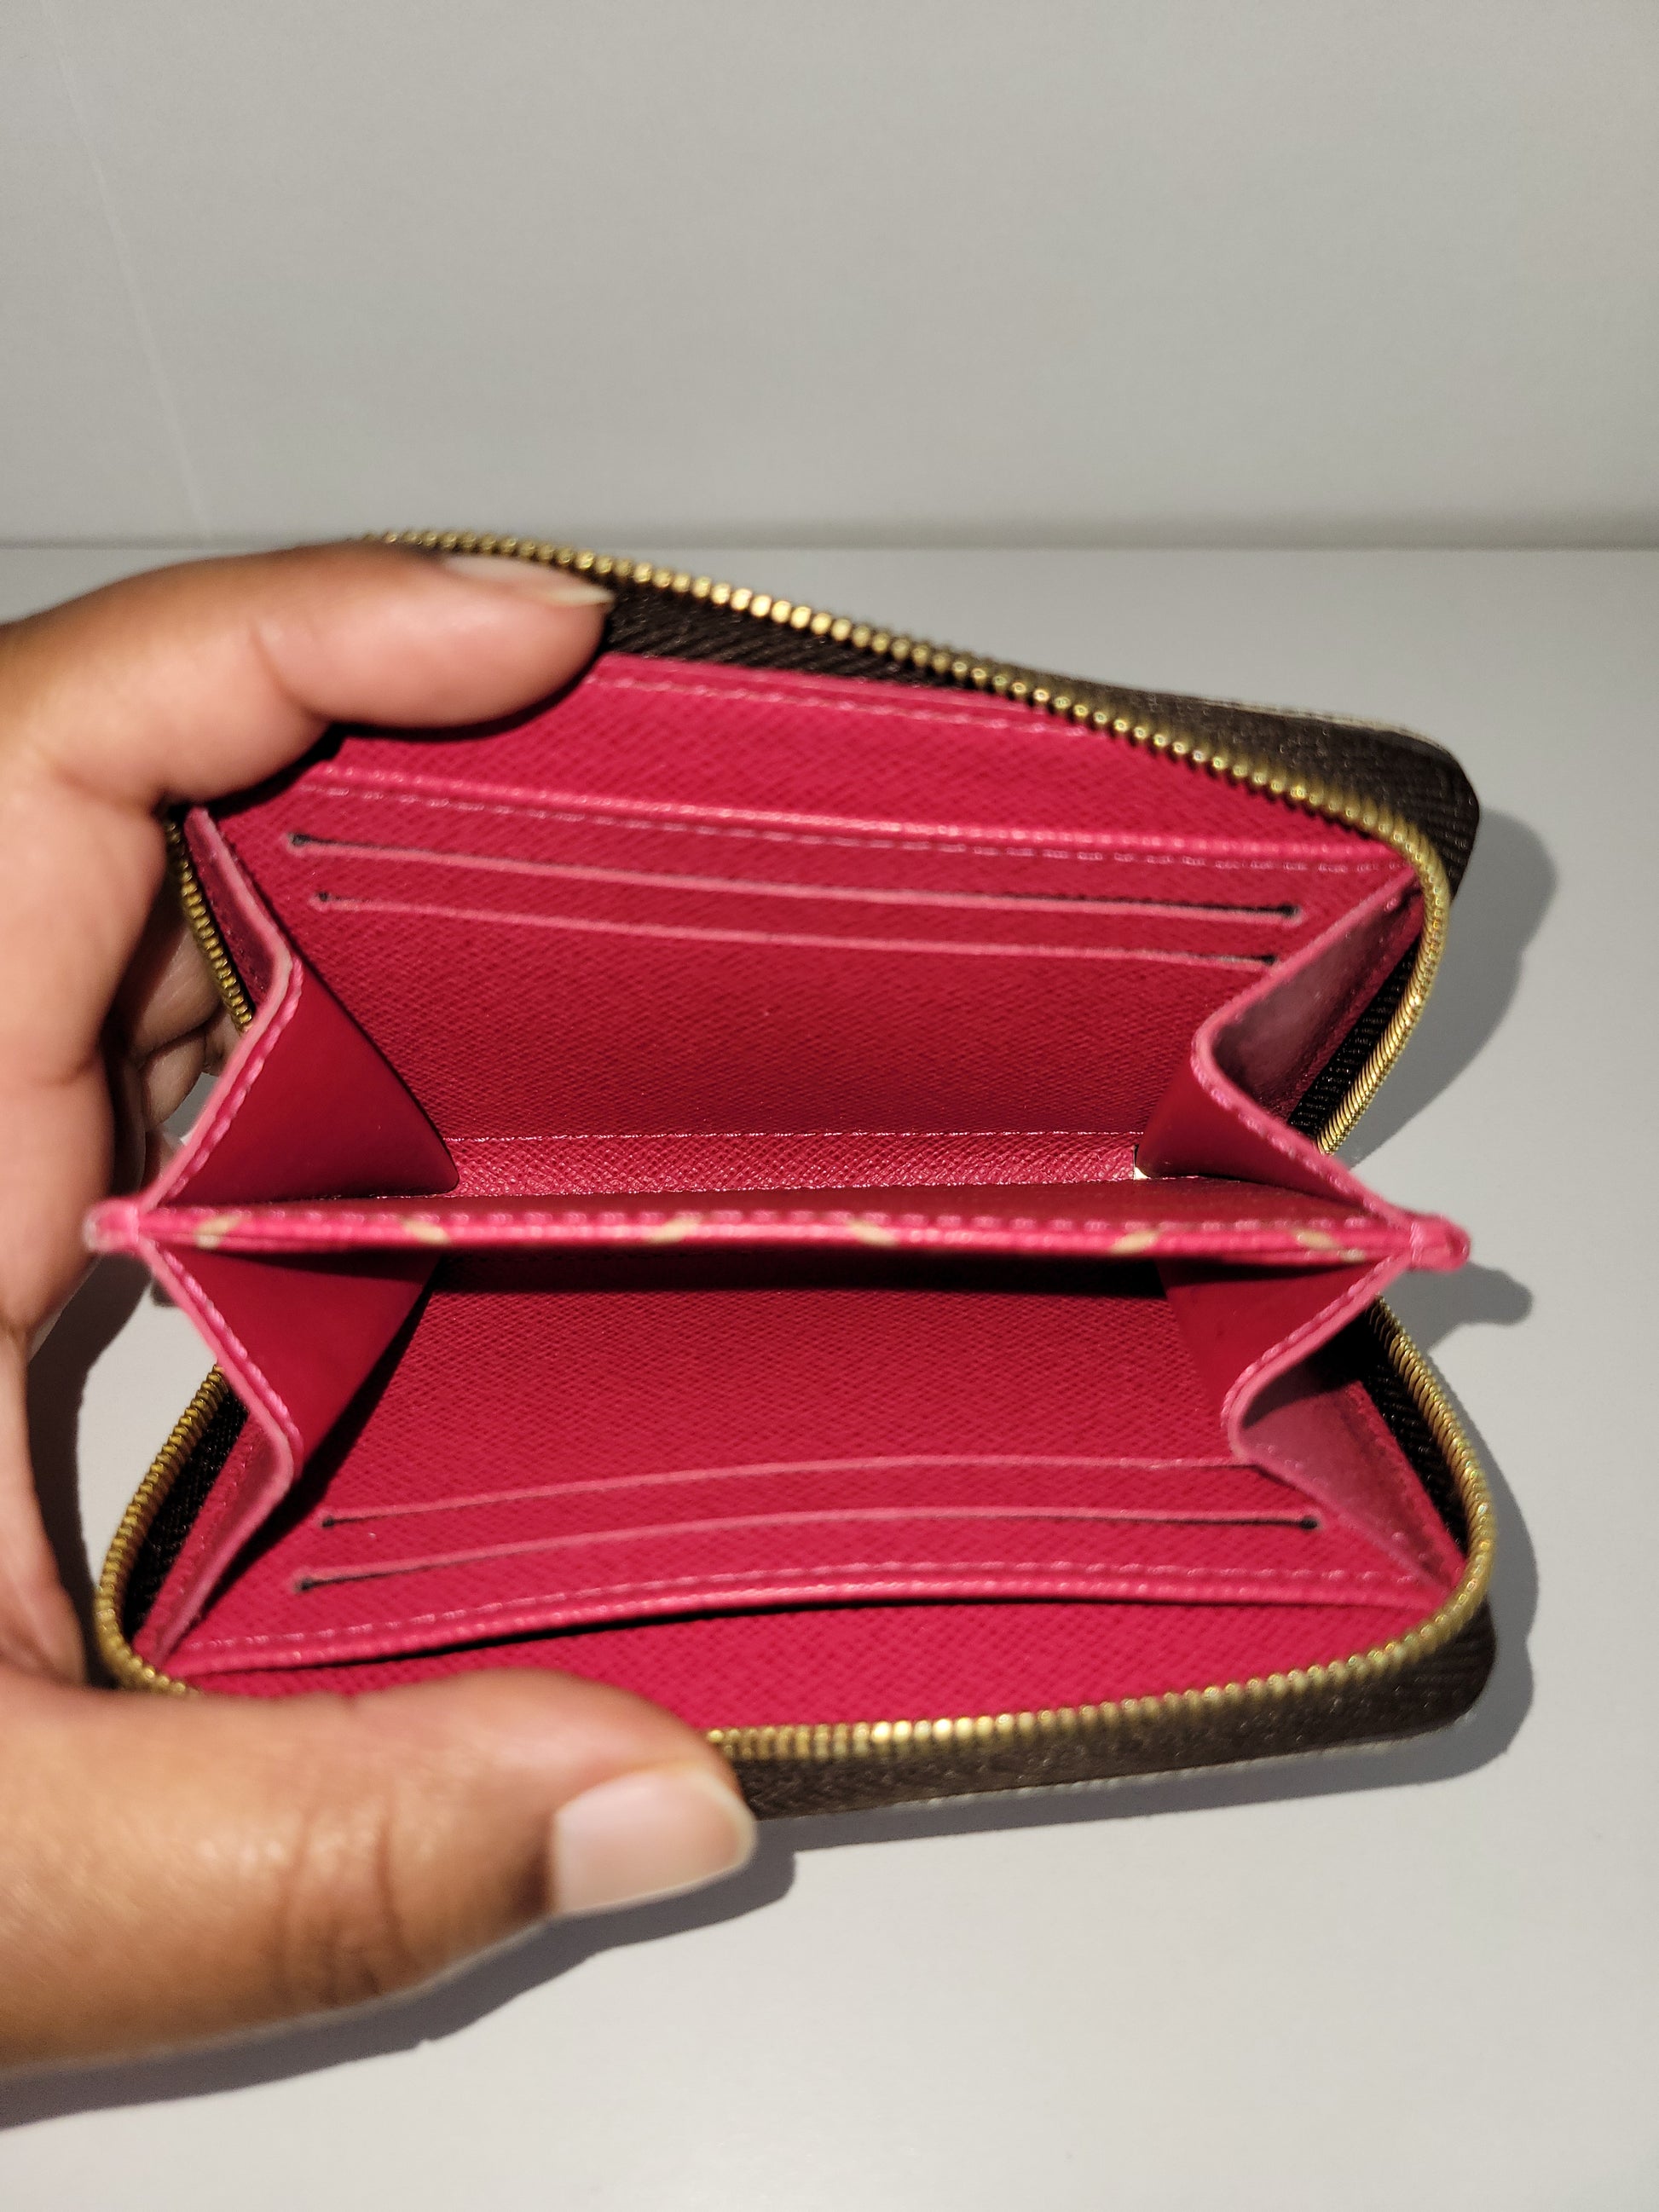 Louis Vuitton Zippy Coin Purse Wallet